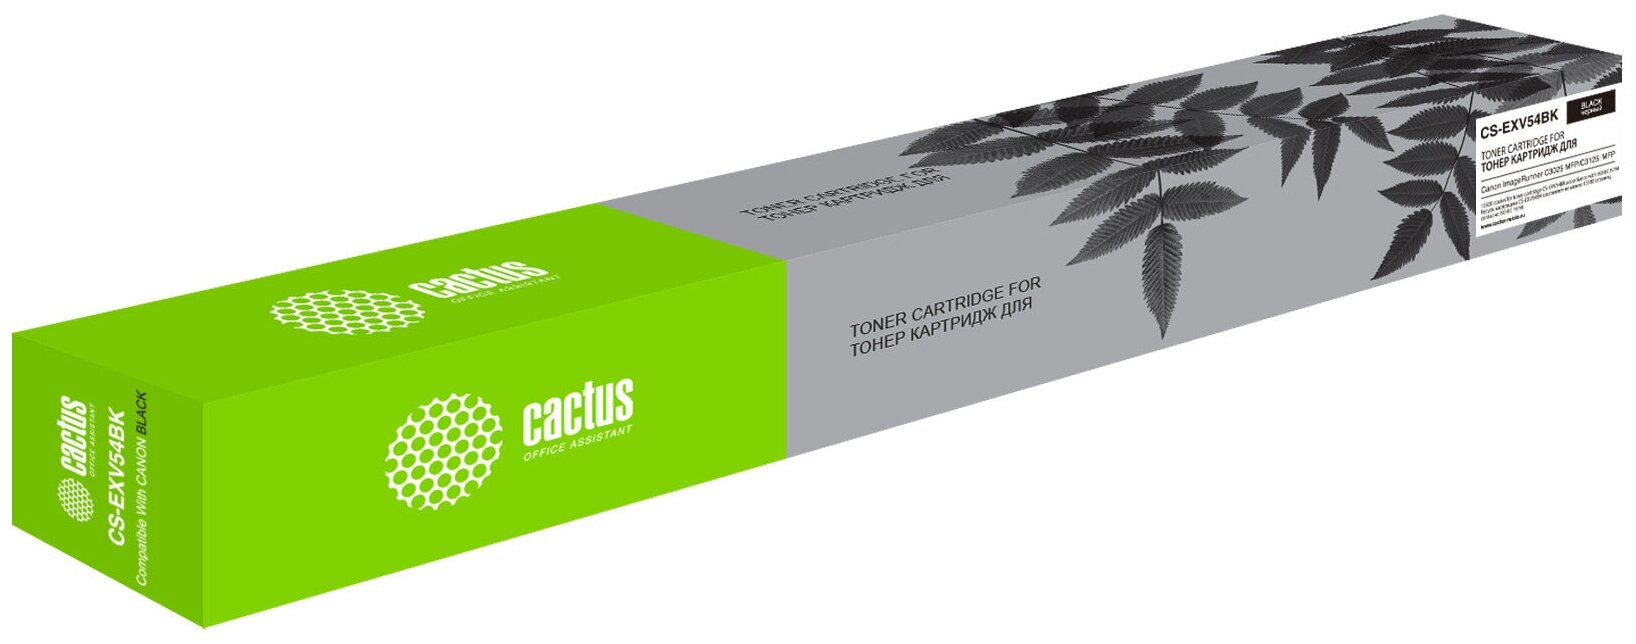 Картридж лазерный Cactus CS-EXV54BK C-EXV54B черный (15500стр.) для Canon ImageRunner C3025 MFP/ C30